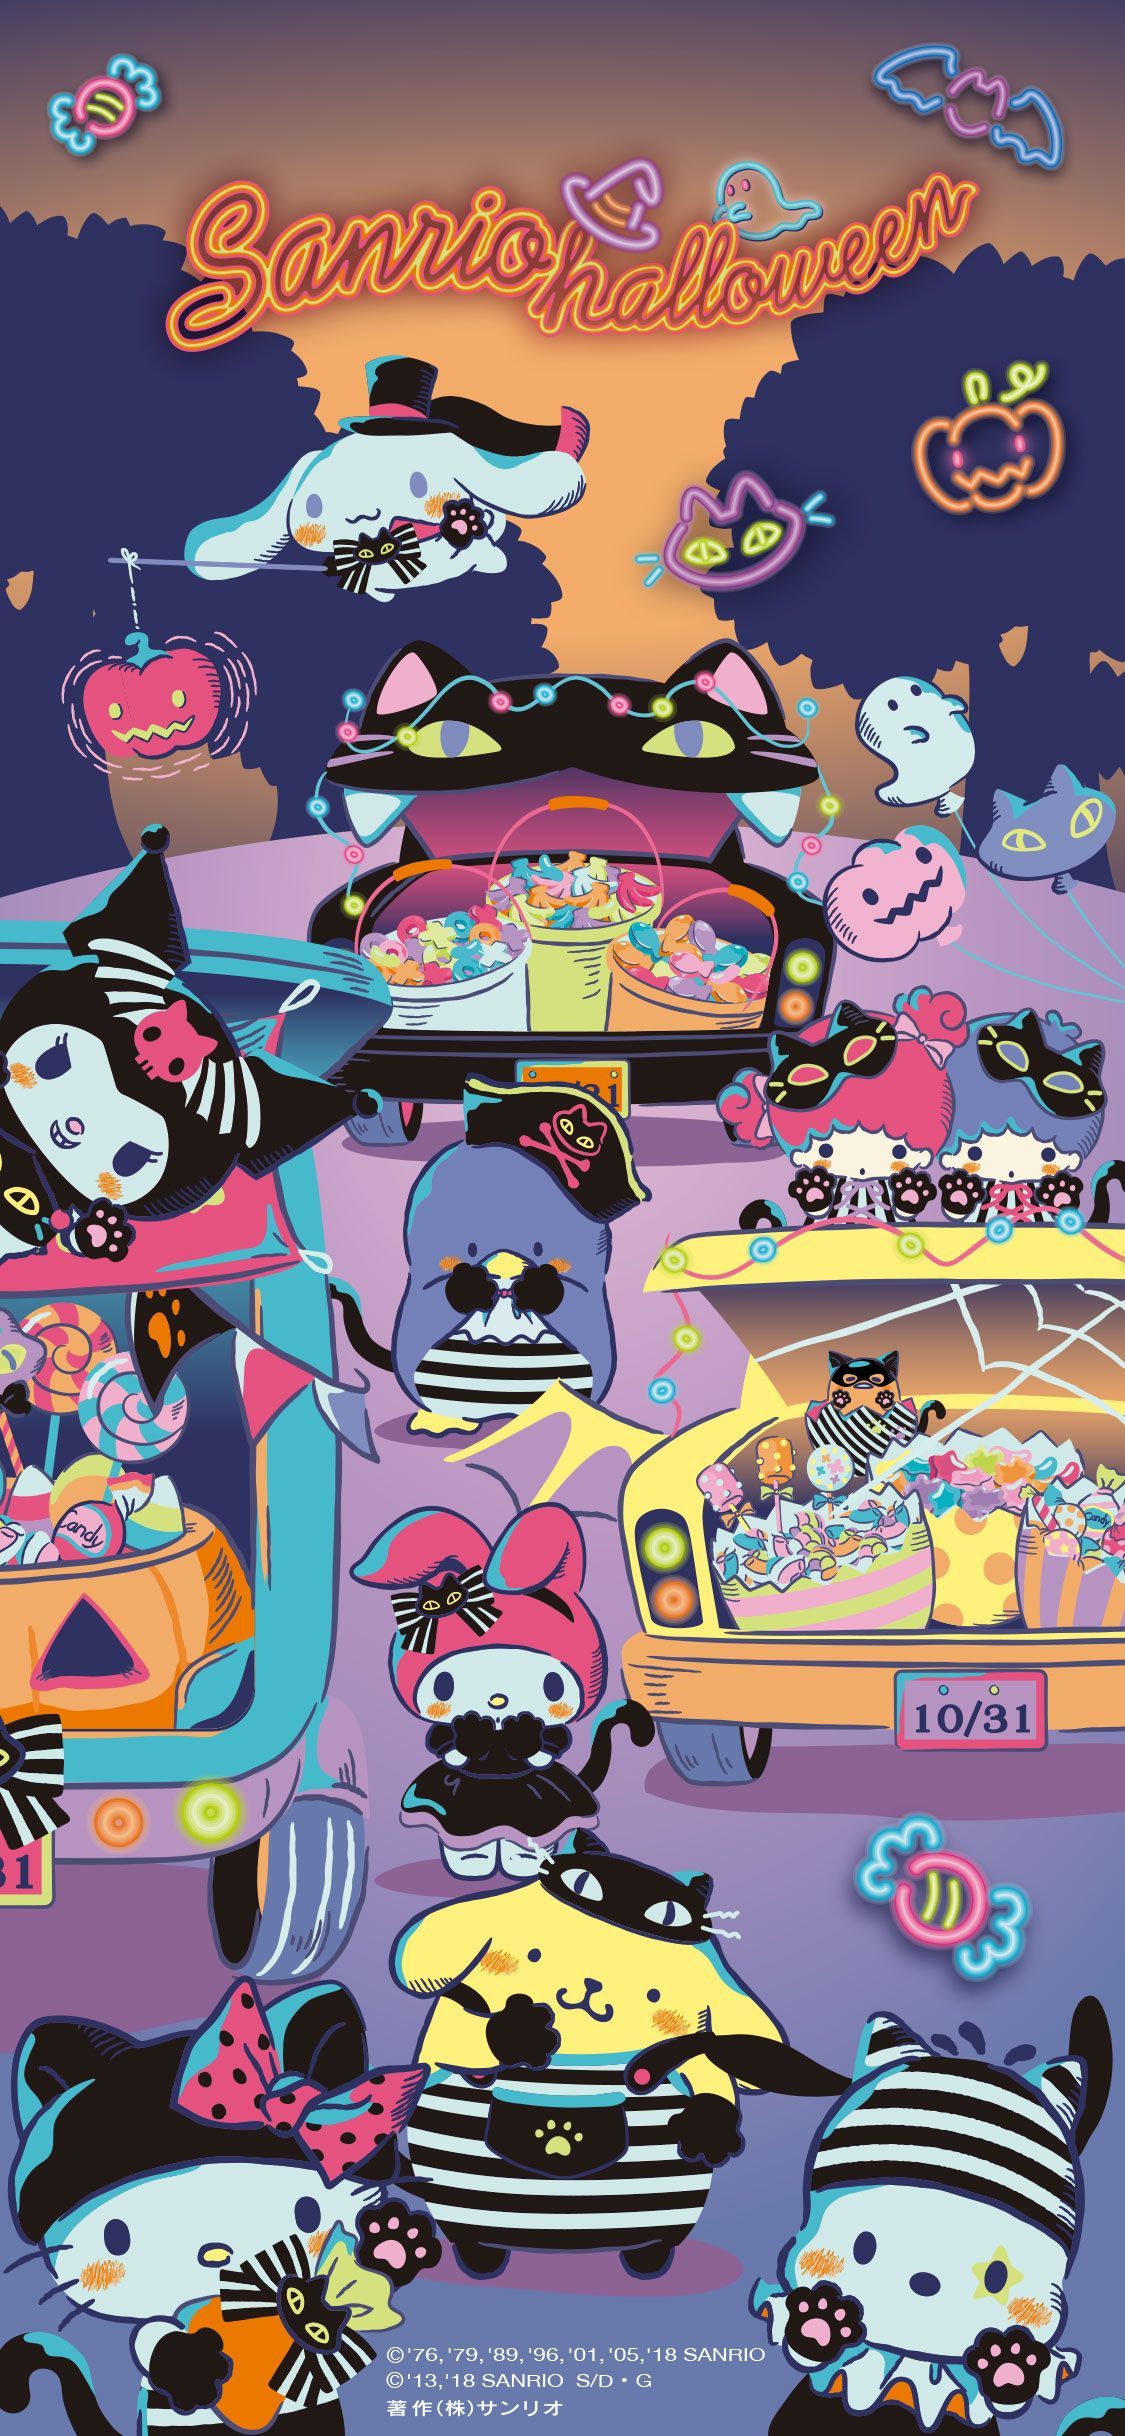 1125×2436】201810 Sanrio Halloween Special. Hello kitty halloween wallpaper, Hello kitty halloween, Halloween wallpaper